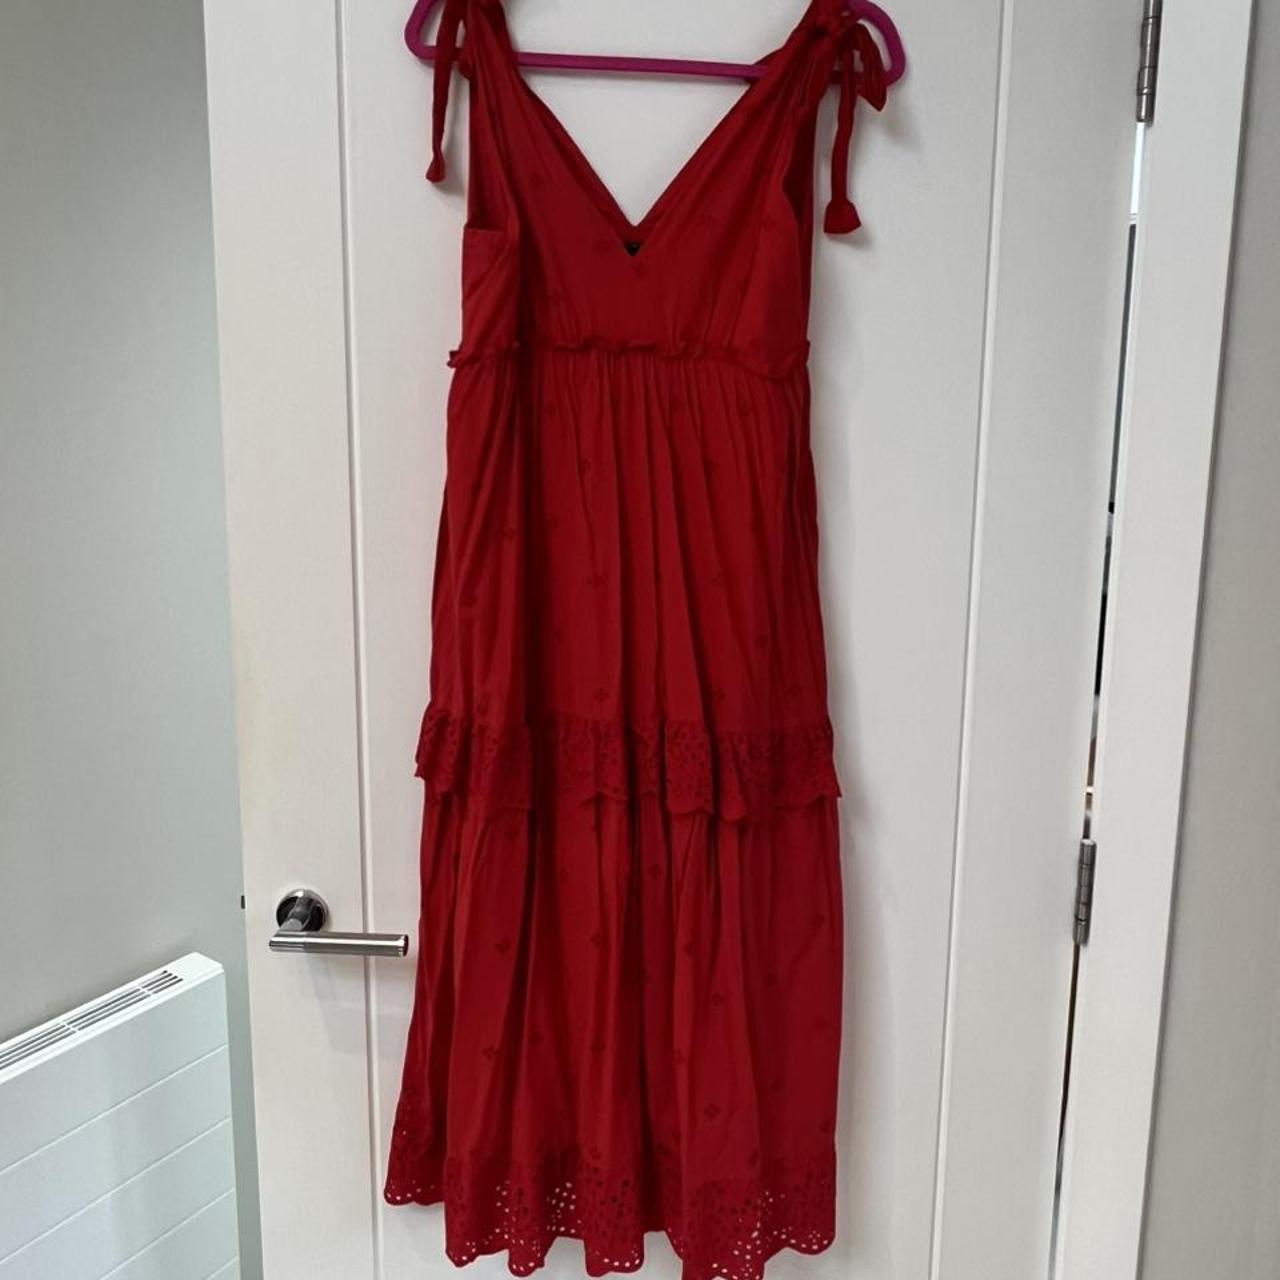 Red Zara broderie, tiered summer dress. Size M. No... - Depop